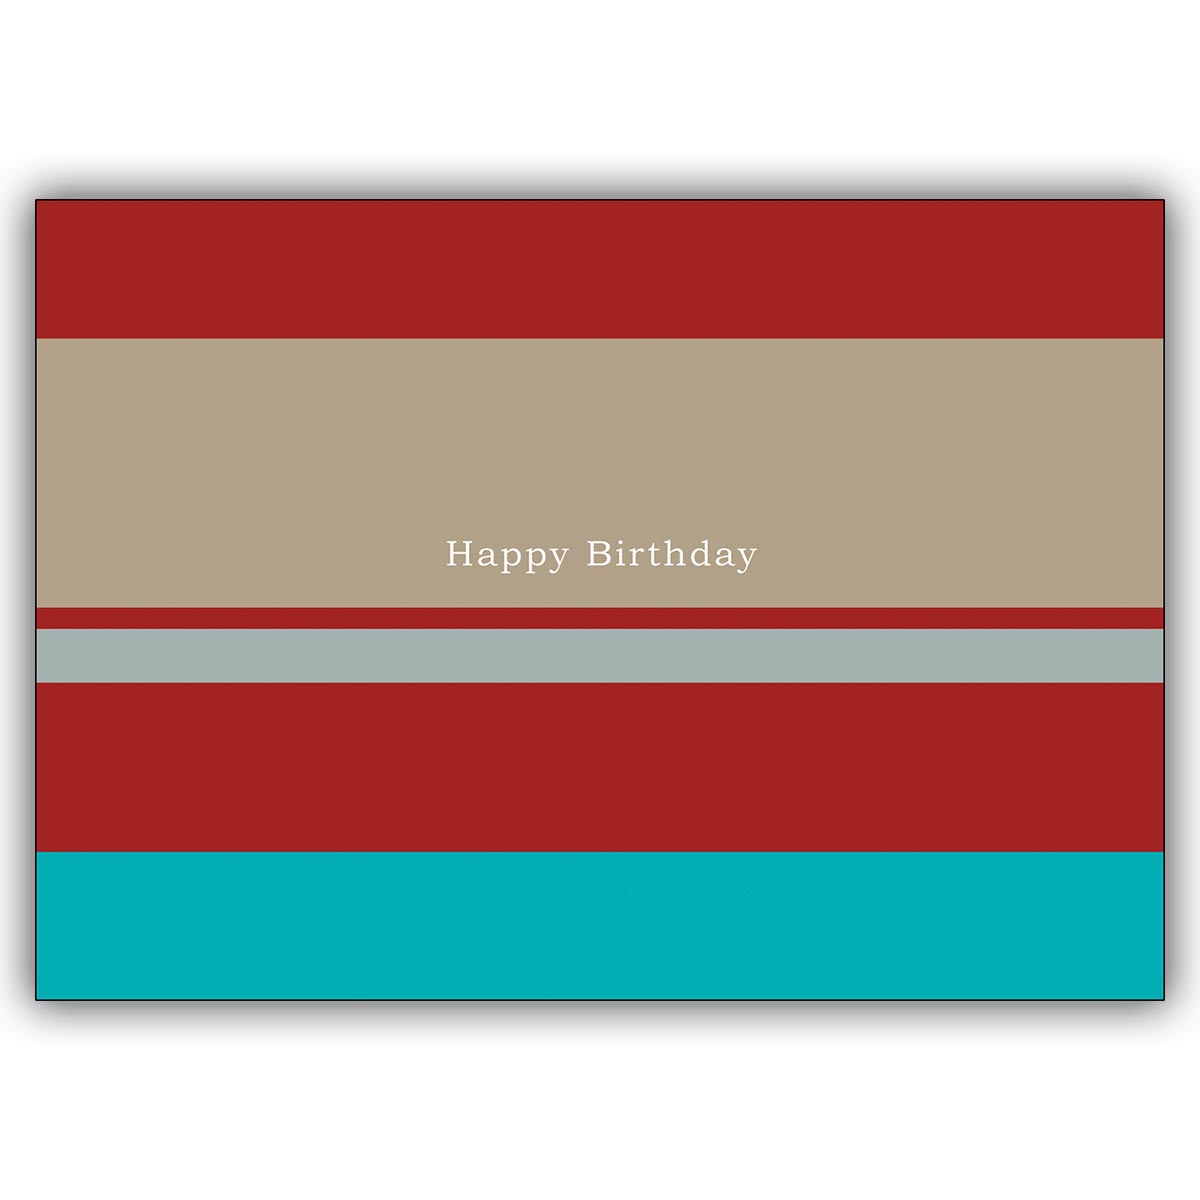 Schicke Geburtstagskarte "Happy Birthday" im trendigen Streifenlook